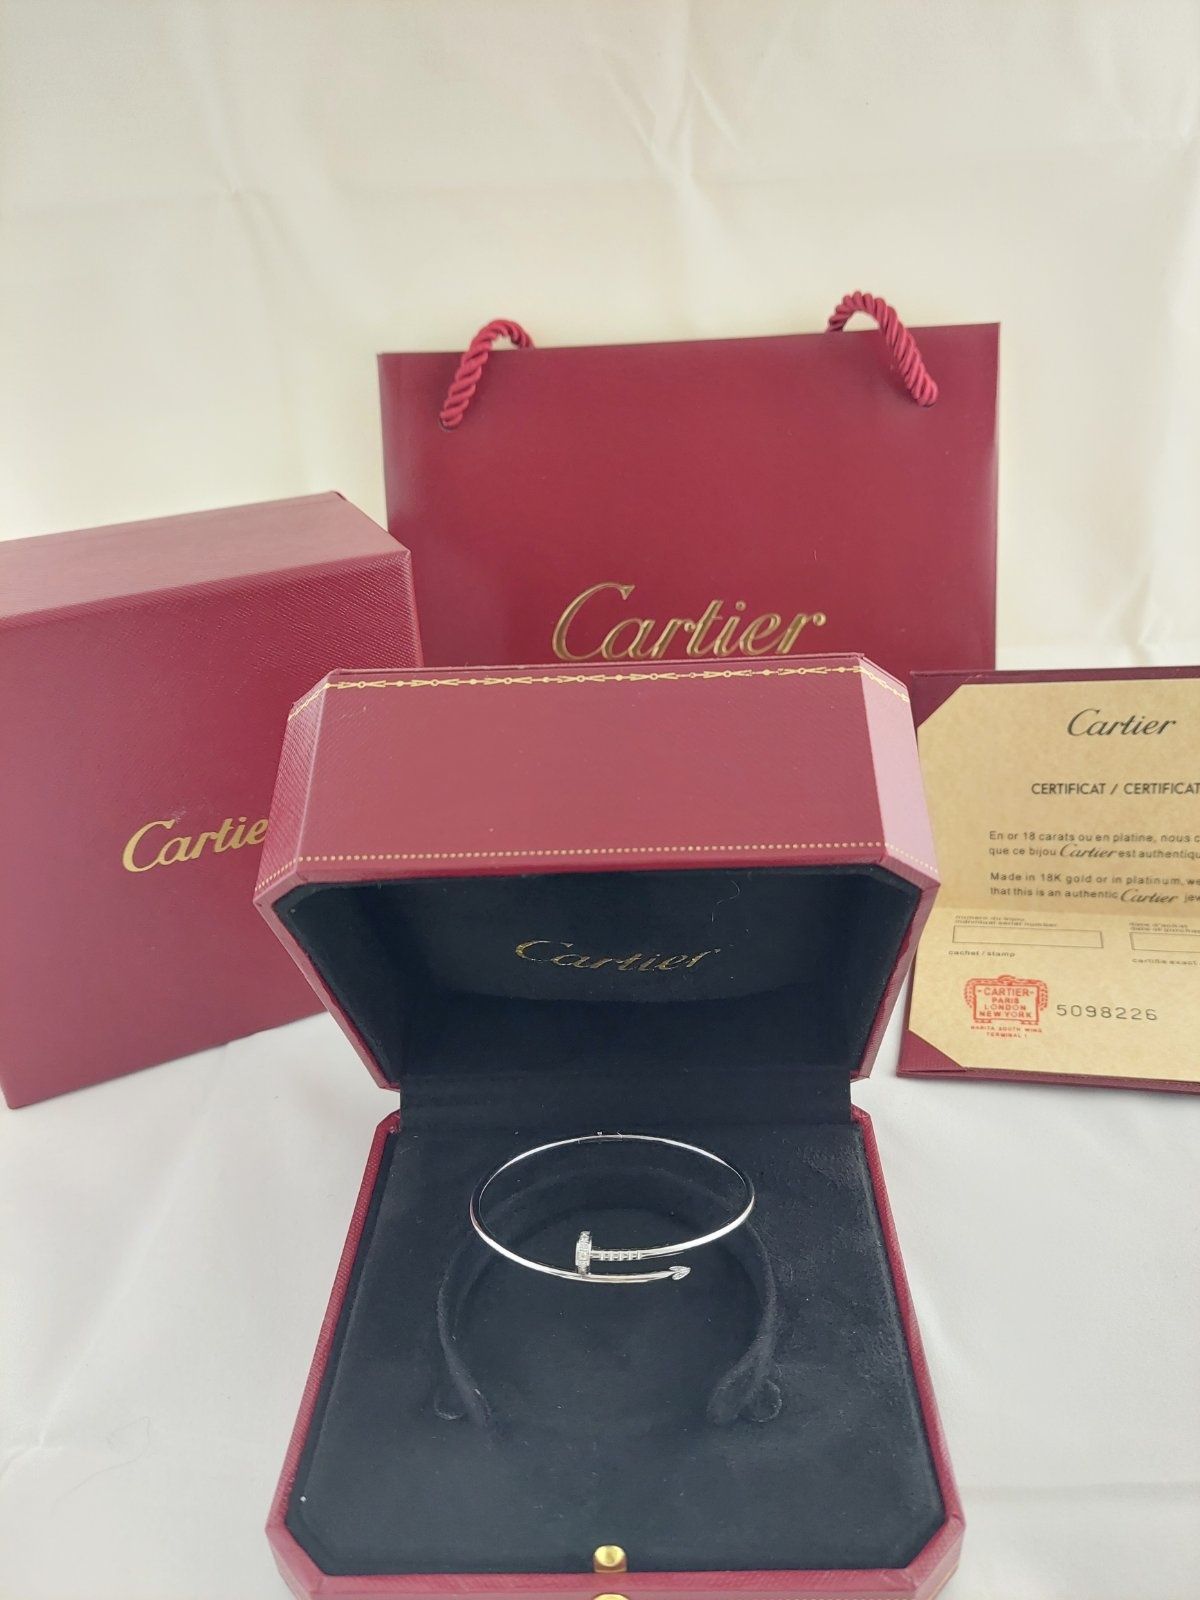 Золотой браслет Juste un Clou (Гвоздь) с бриллиантами в стиле Cartier